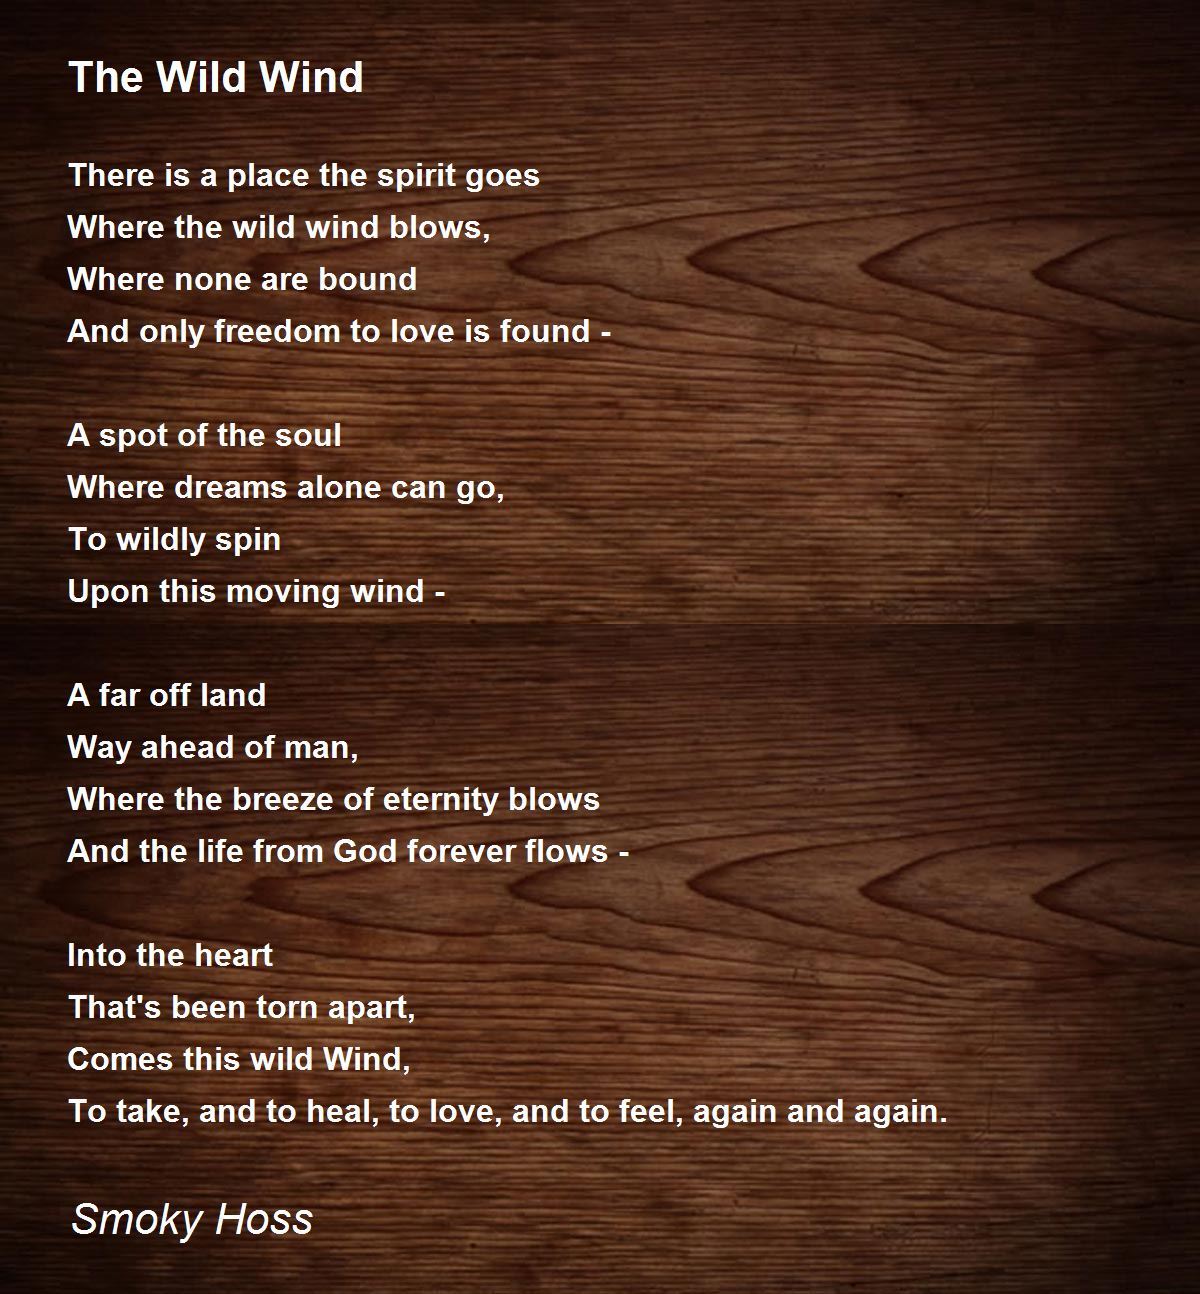 The Wild Wind - The Wild Wind Poem by Smoky Hoss